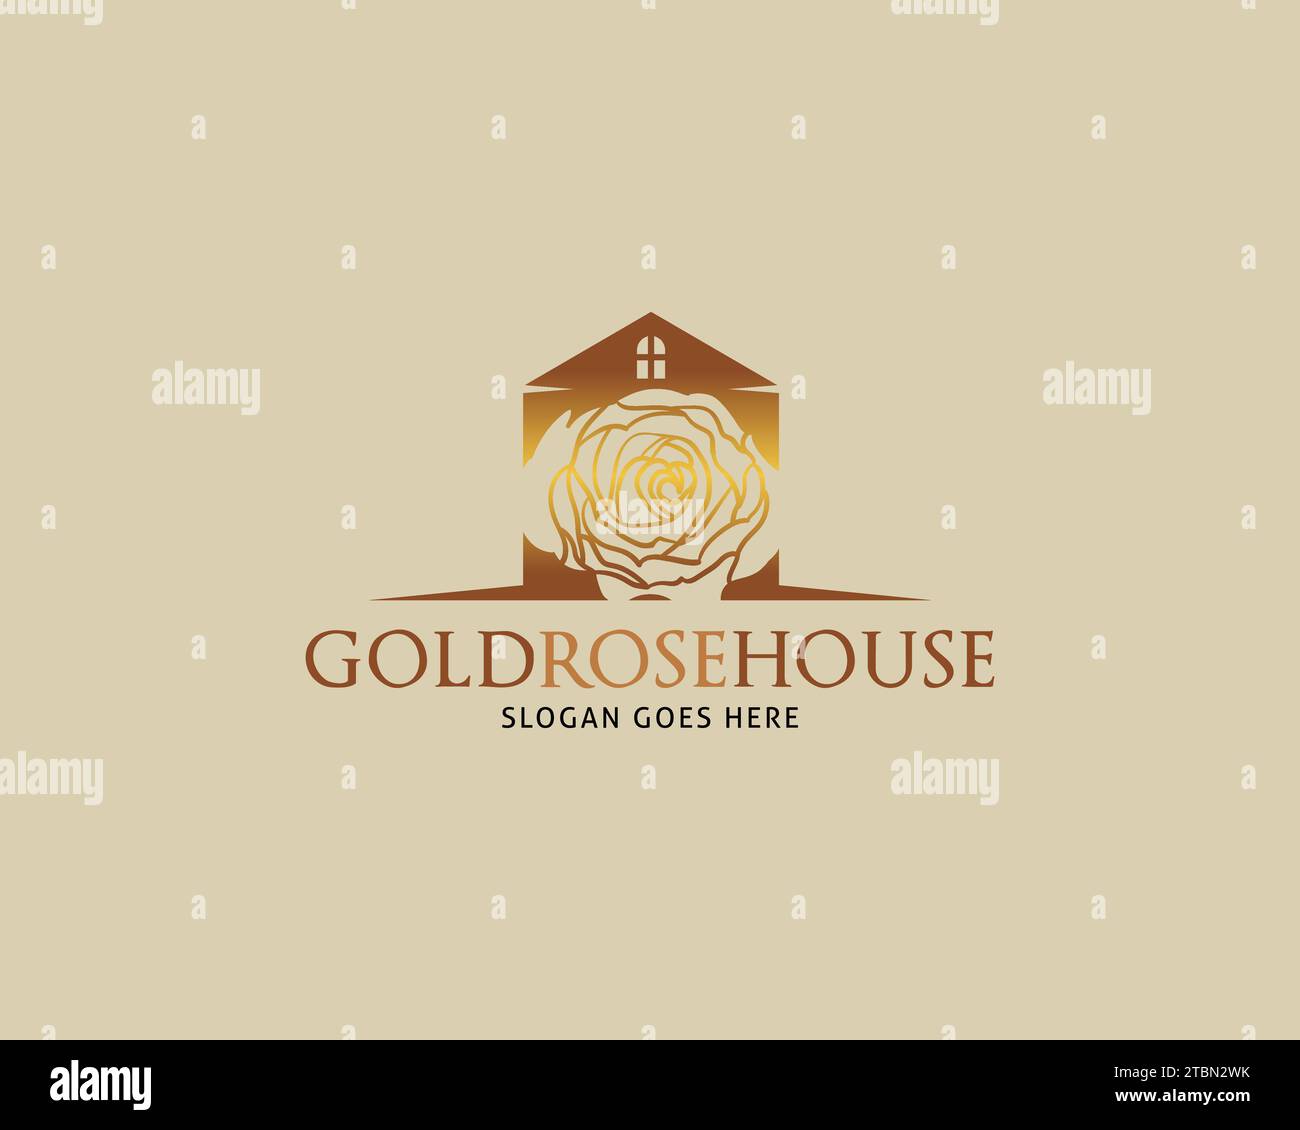 Golden Rose House Vector Logo Design Template Stock Vector